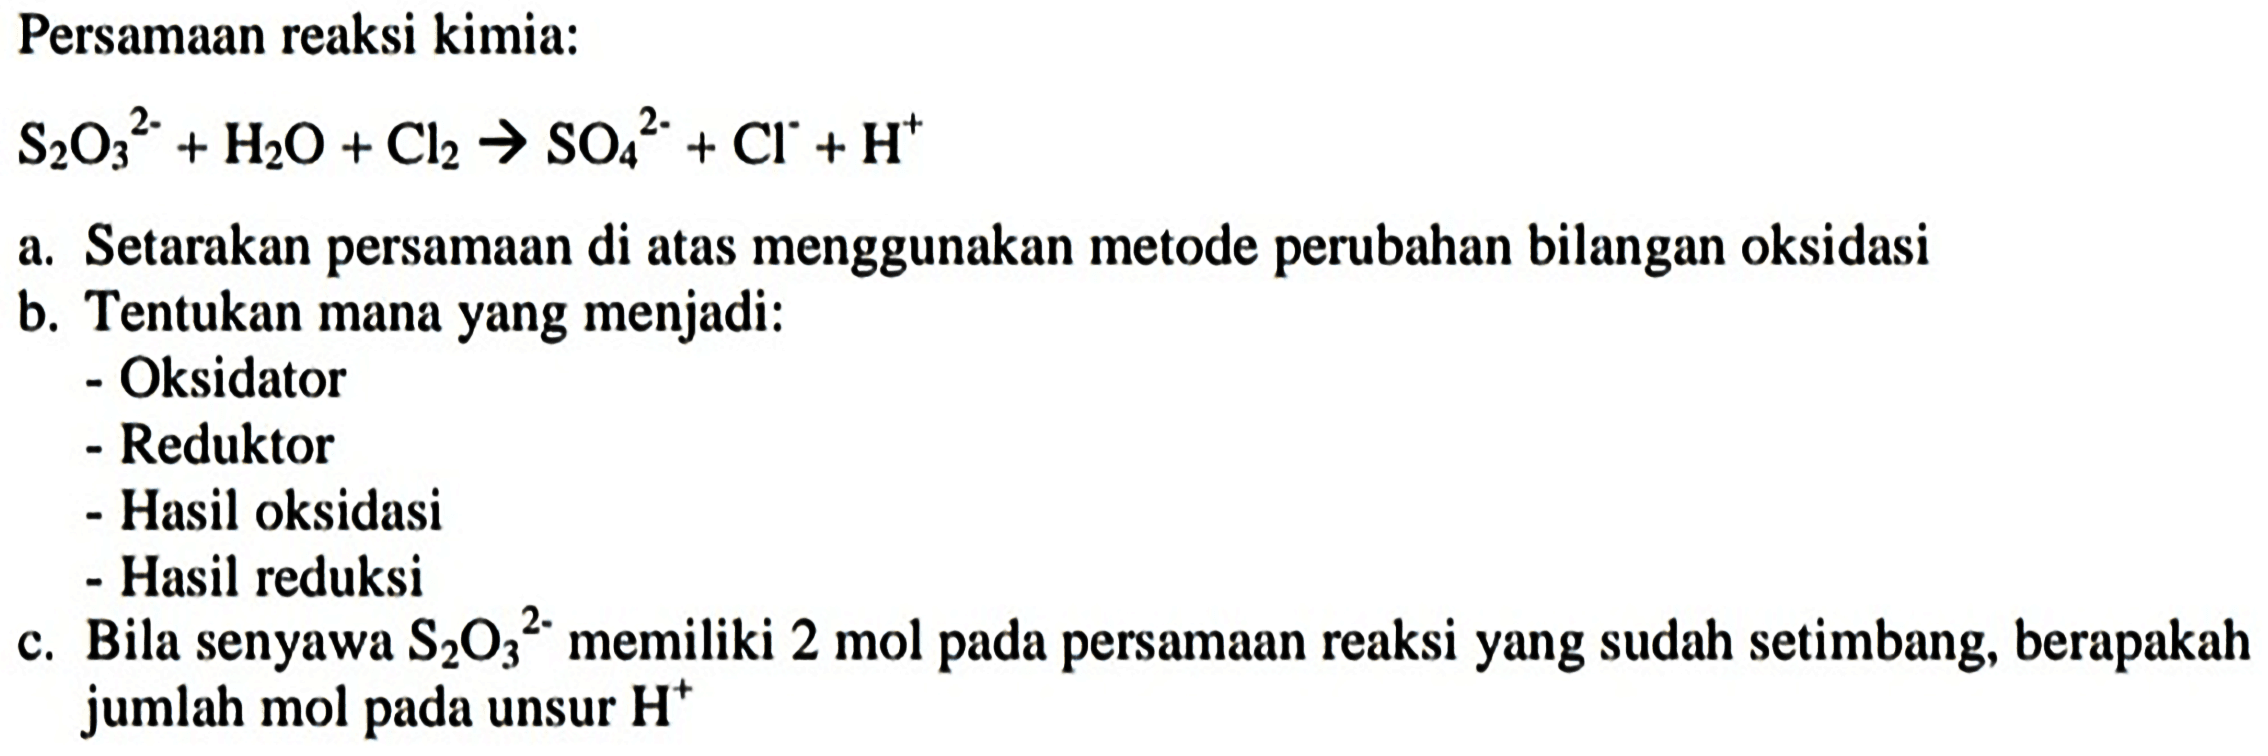 Persamaan reaksi kimia:
 S_(2) O_(3)^(2-)+H_(2) O+Cl_(2) -> SO_(4)/( )^(2-)+Cl^(-)+H^(+) 
a. Setarakan persamaan di atas menggunakan metode perubahan bilangan oksidasi
b. Tentukan mana yang menjadi:
- Oksidator
- Reduktor
- Hasil oksidasi
- Hasil reduksi
c. Bila senyawa  S_(2) O_(3)/( )^(2-)  memiliki 2 mol pada persamaan reaksi yang sudah setimbang, berapakah jumlah mol pada unsur  H^(+) 